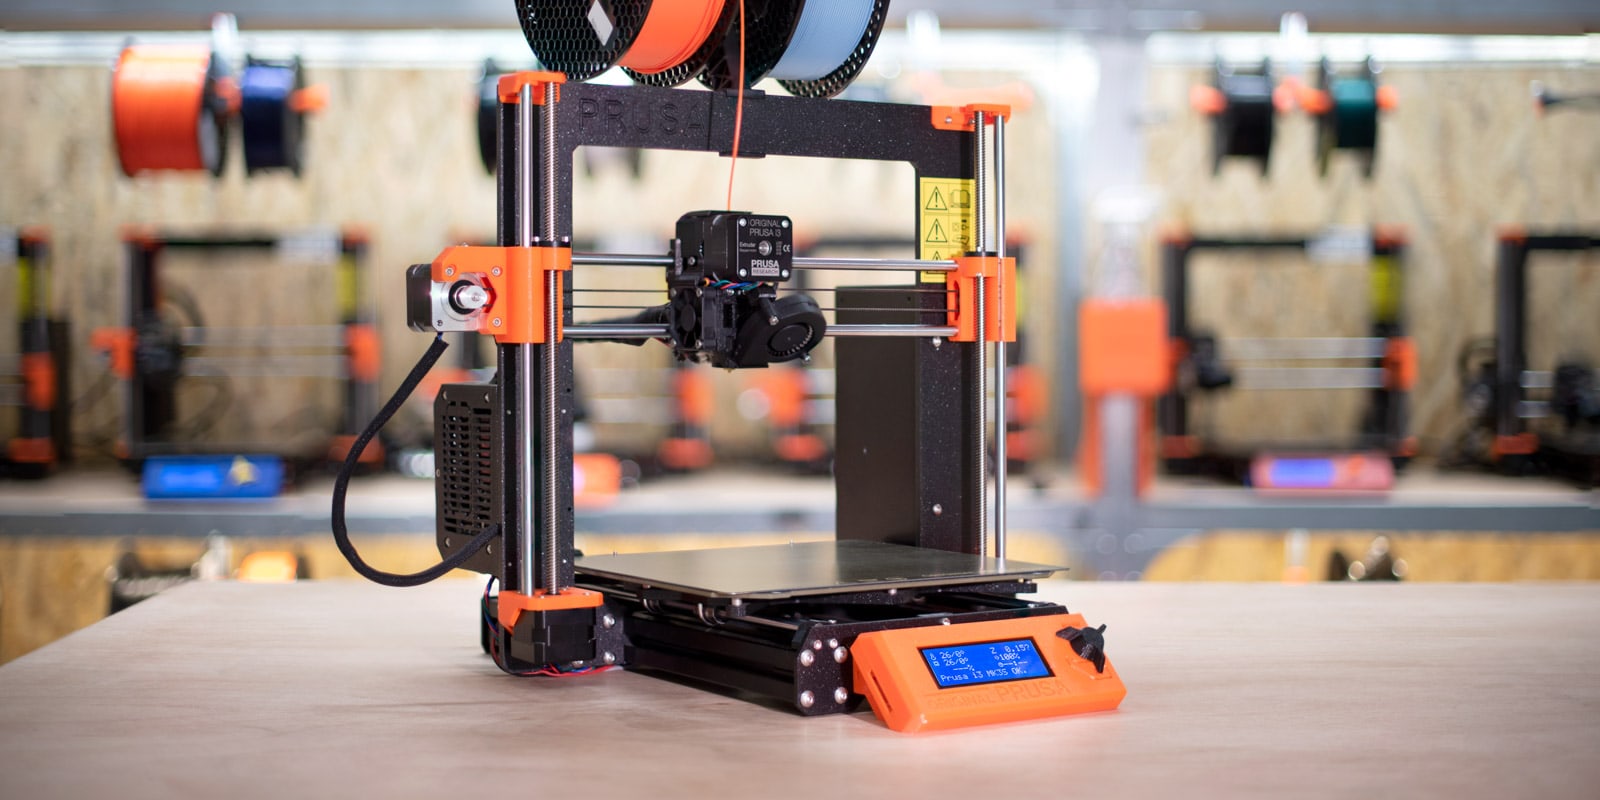 Maggiori informazioni su "Le migliori stampanti 3D sotto i € 300 - Guida all'acquisto"